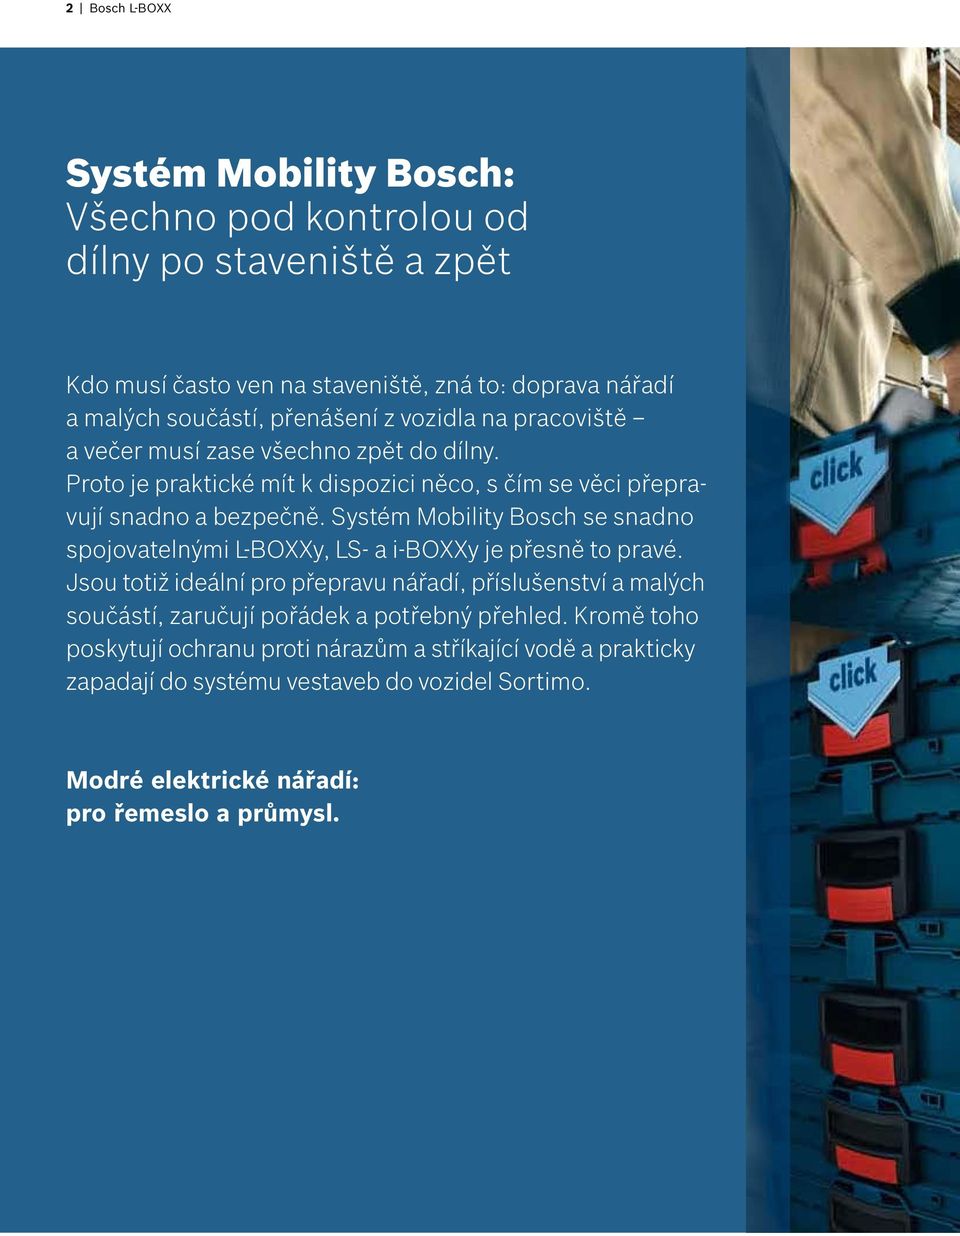 Systém Mobility Bosch se snadno spojovatelnými L-BOXXy, LS- a i-boxxy je přesně to pravé.